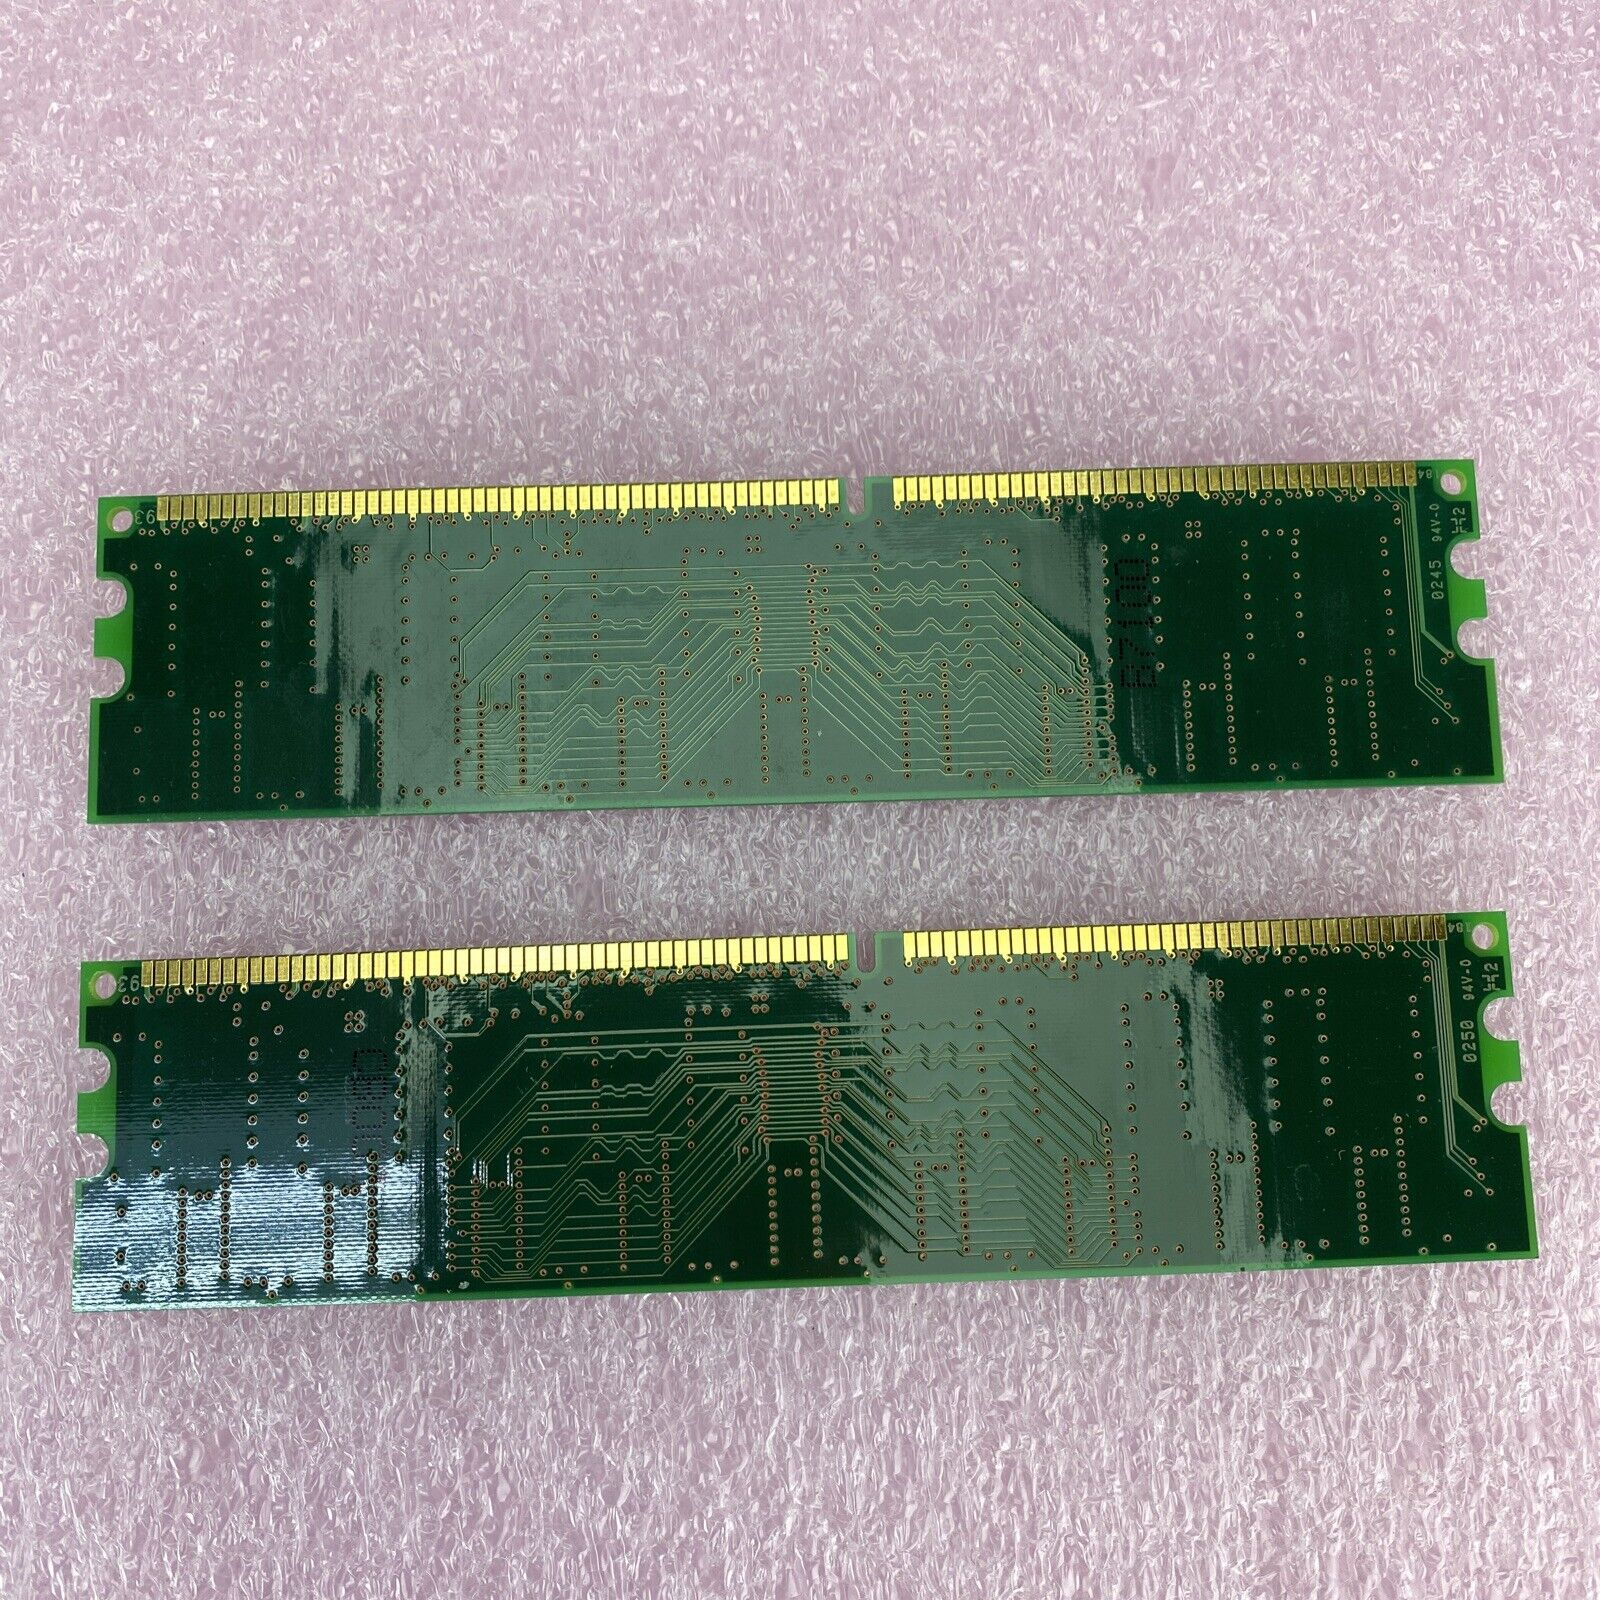 2x 256MB = 512MB Infineon HYS64D32000GU-7-B DDR PC2100U CL2 memory RAM